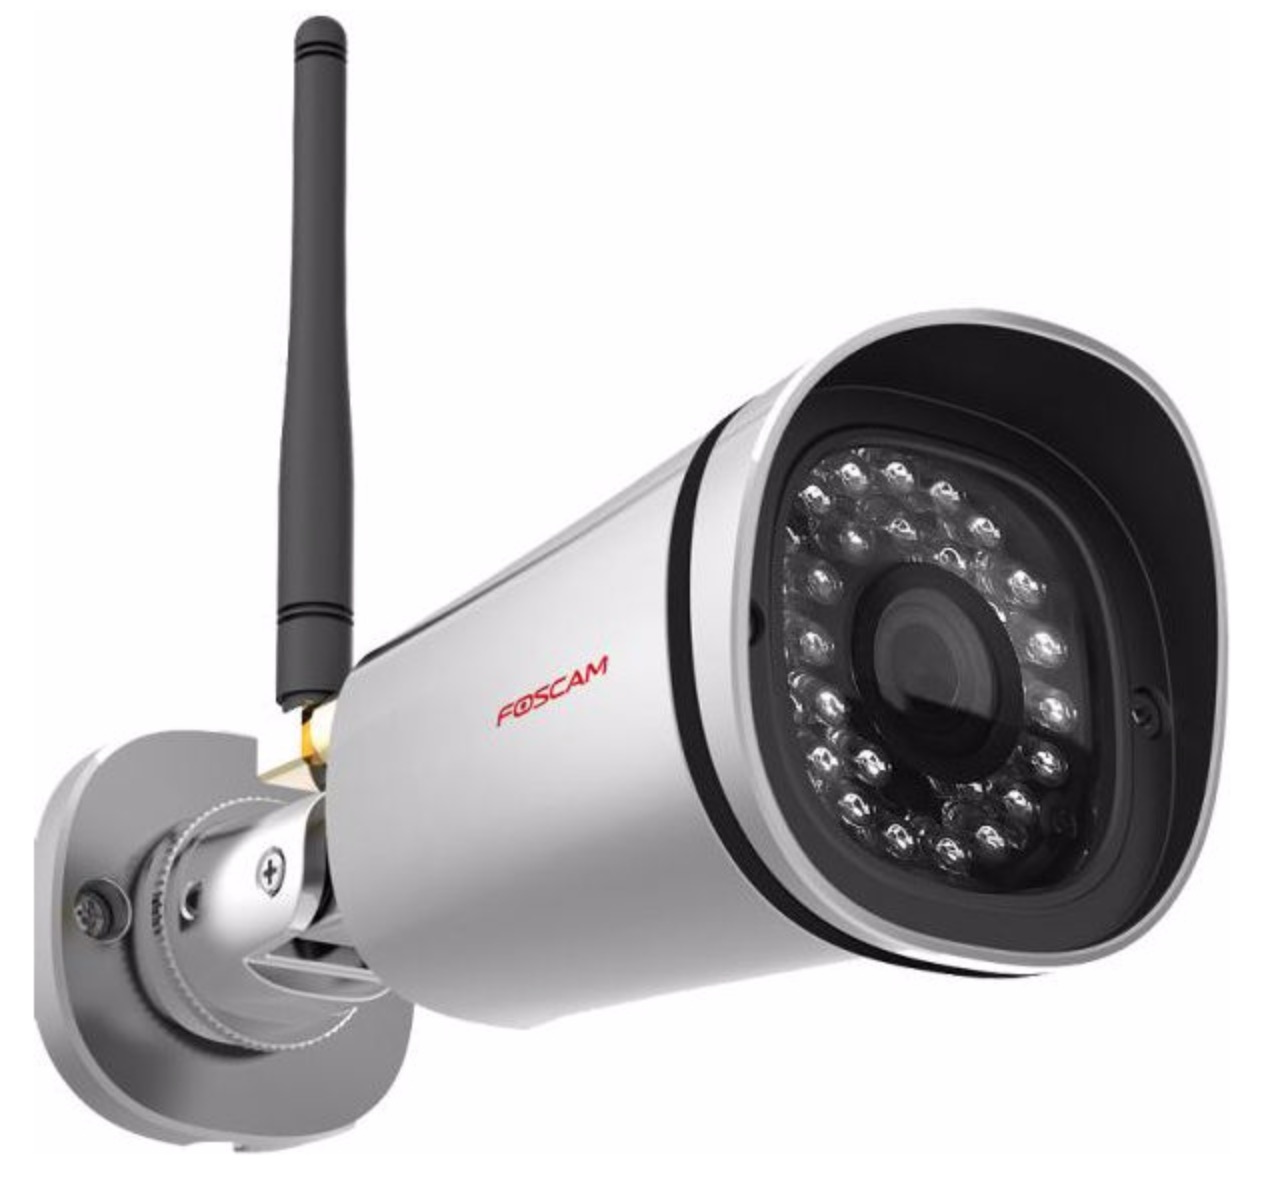 Kabellose Foscam Full-HD IP Kamera FI9900P für nur 86,99 Euro